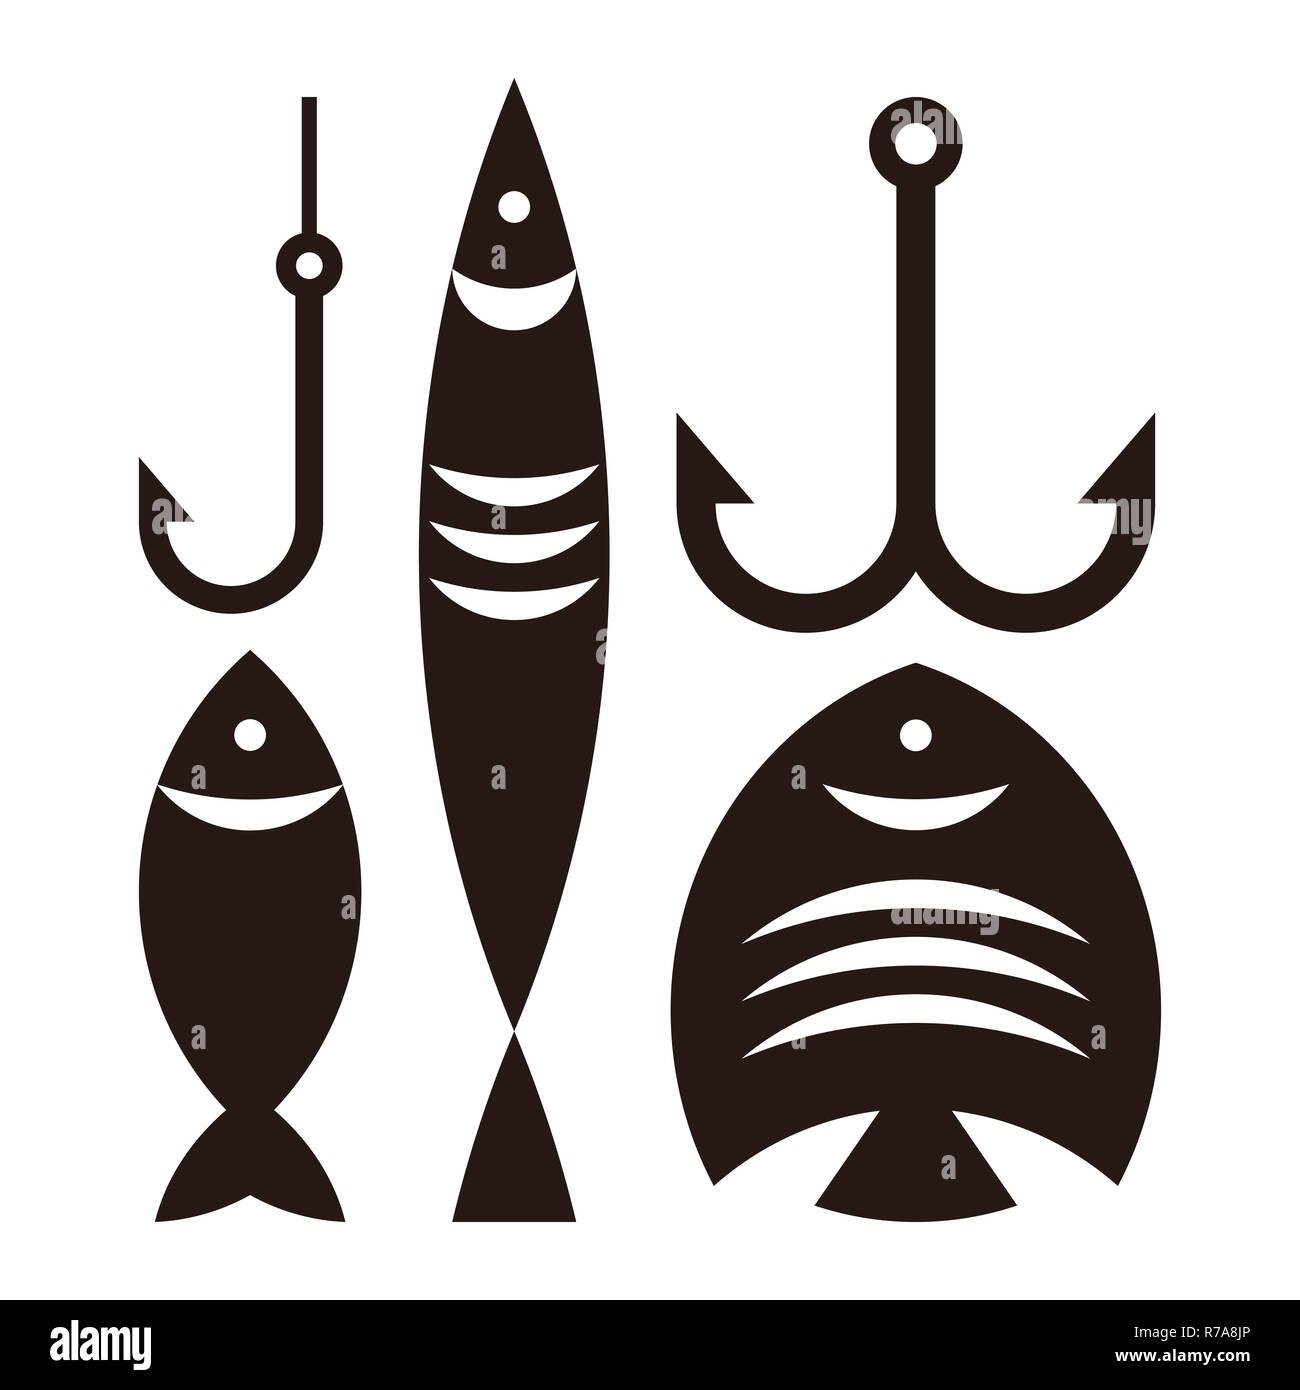 Fishing hooks and fishes. Fishing symbol isolated on white background Stock Photo